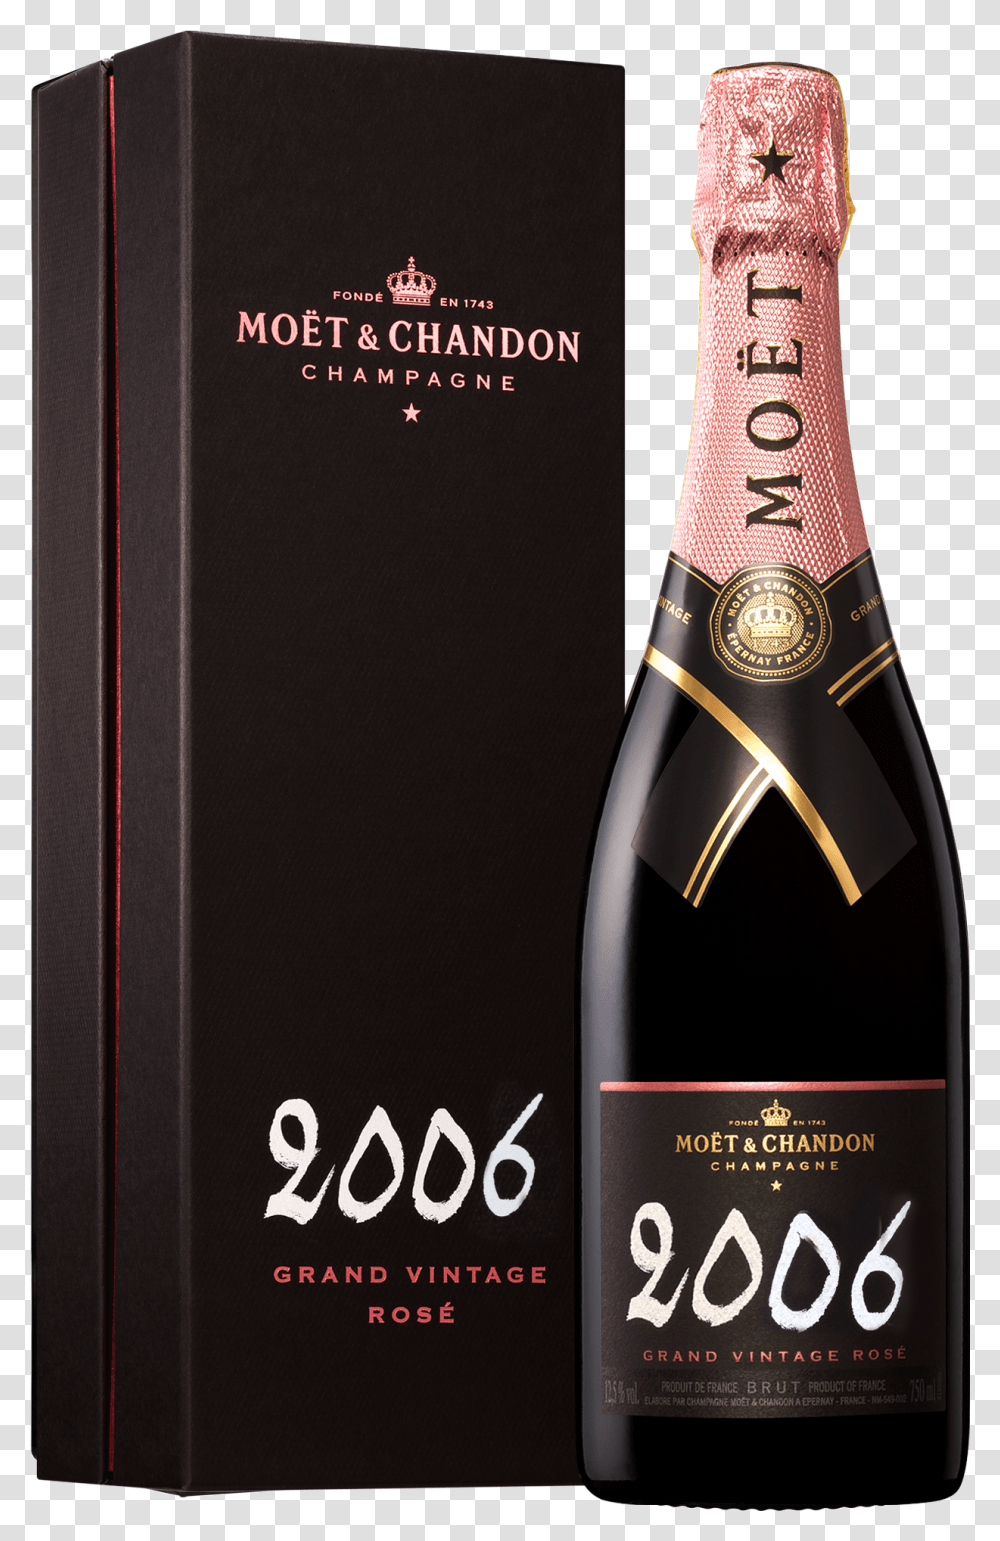 Moet Chandon Grand Vintage Rose 2006 V Moet Champagne 2006 Grand Vintage, Book, Alcohol, Beverage, Drink Transparent Png